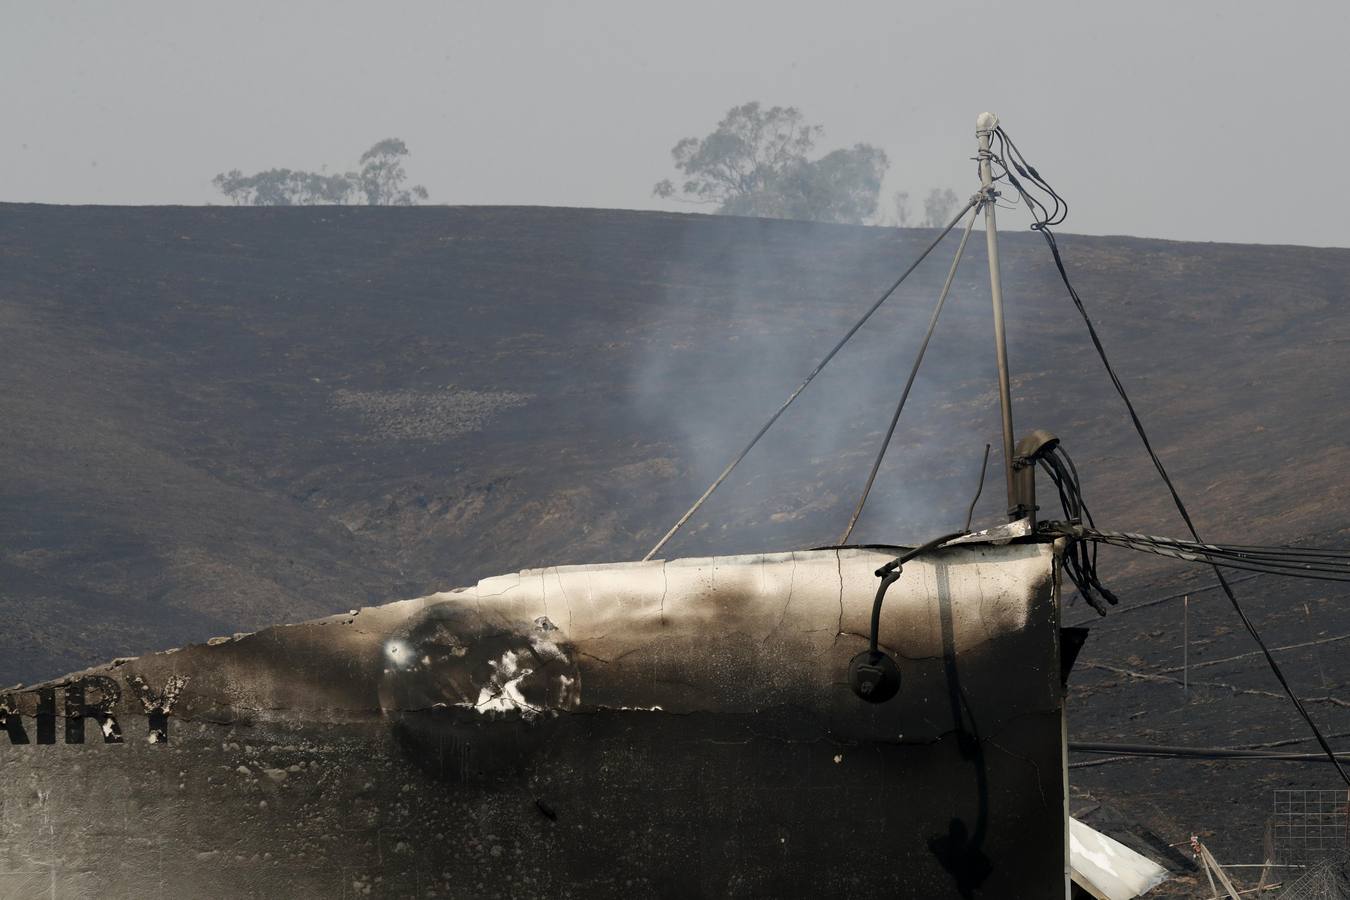 Los devastadores incendios que desde el domingo avanzan en el norte de California (EE.UU.) han dejado al menos 17 muertos y han arrasado más de 46.500 hectáreas, según los últimos datos facilitados por el Departamento Forestal y de Protección contra Incendios del estado